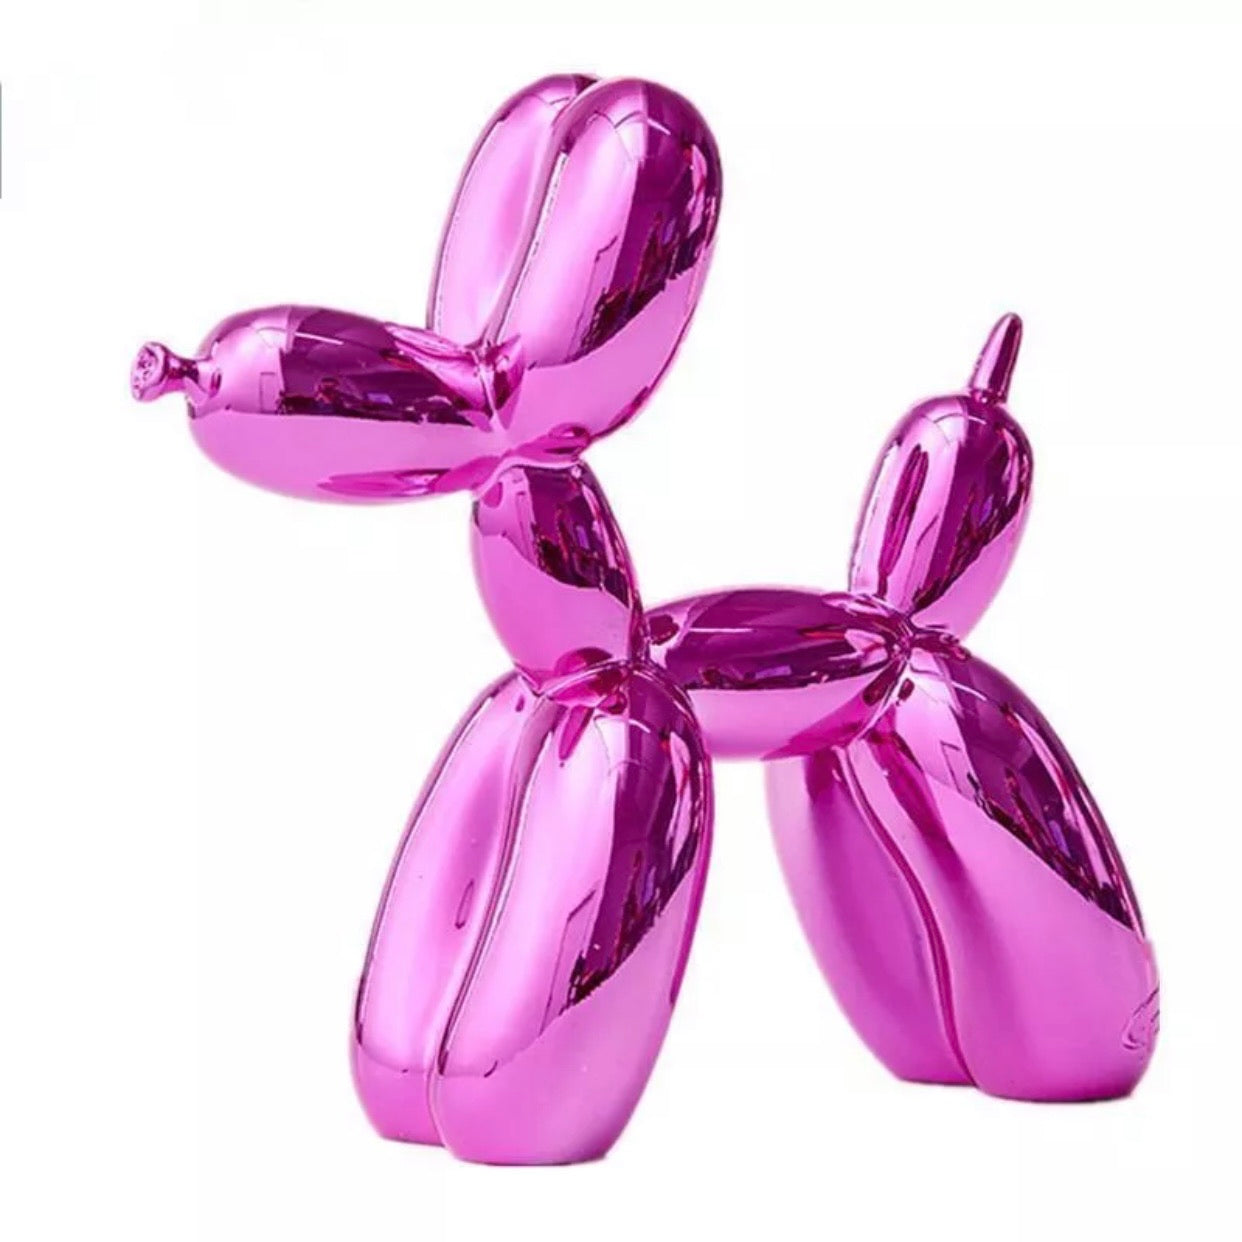 Small Balloon Dog Metallic Purple